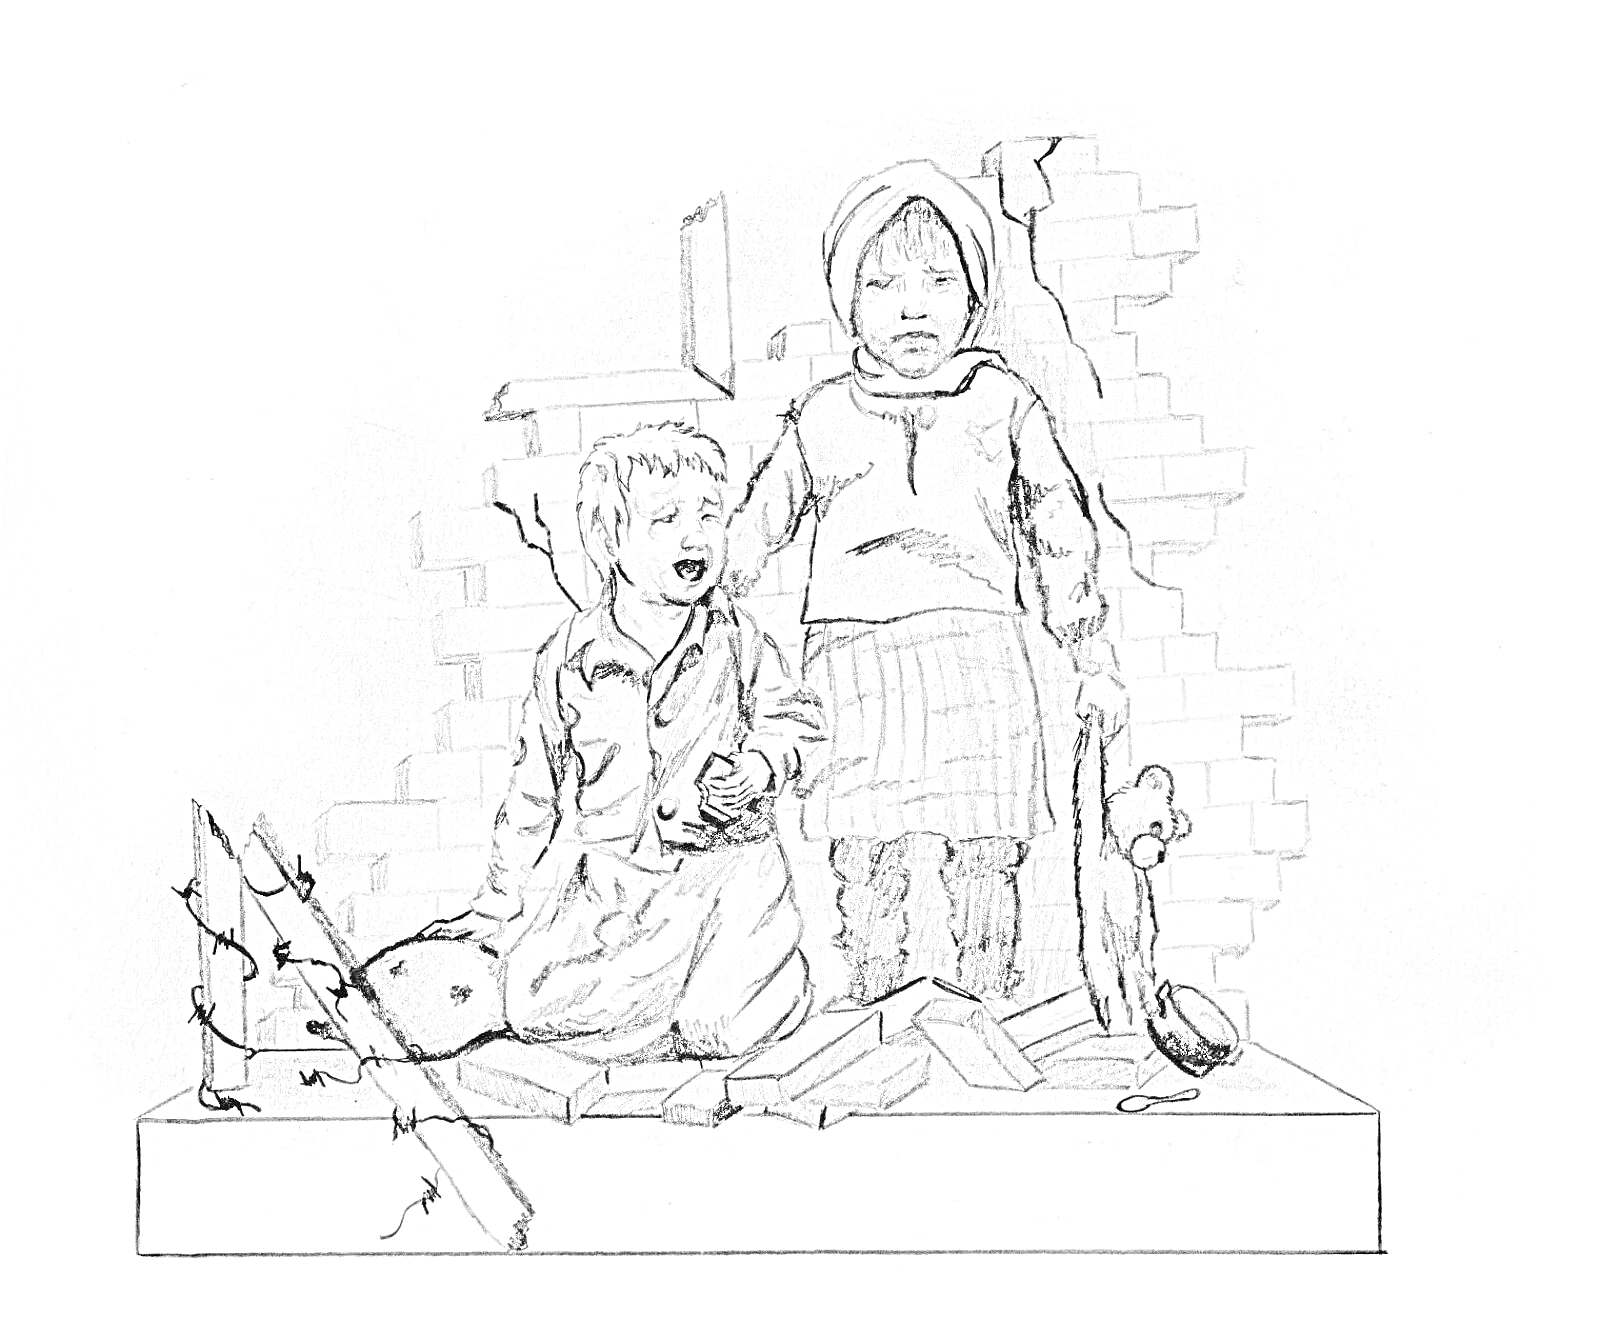 Раскраска Двое детей на фоне разрушенной стены, один сидит на земле с кашей в руках, рядом лежит шлем и игрушка